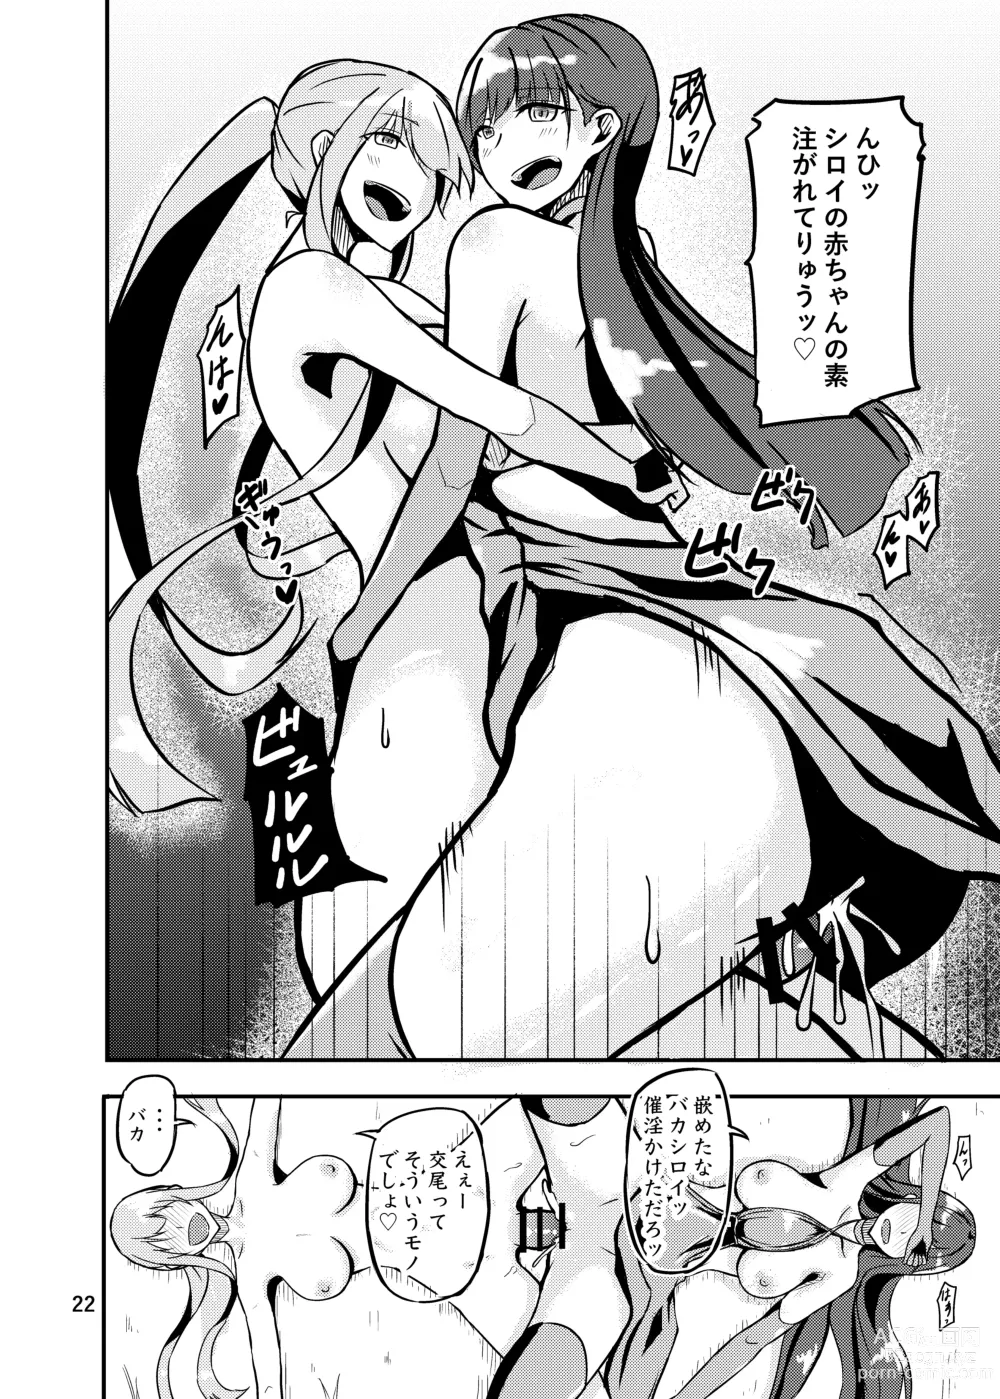 Page 22 of doujinshi 800-man Hiki no Kami-sama.